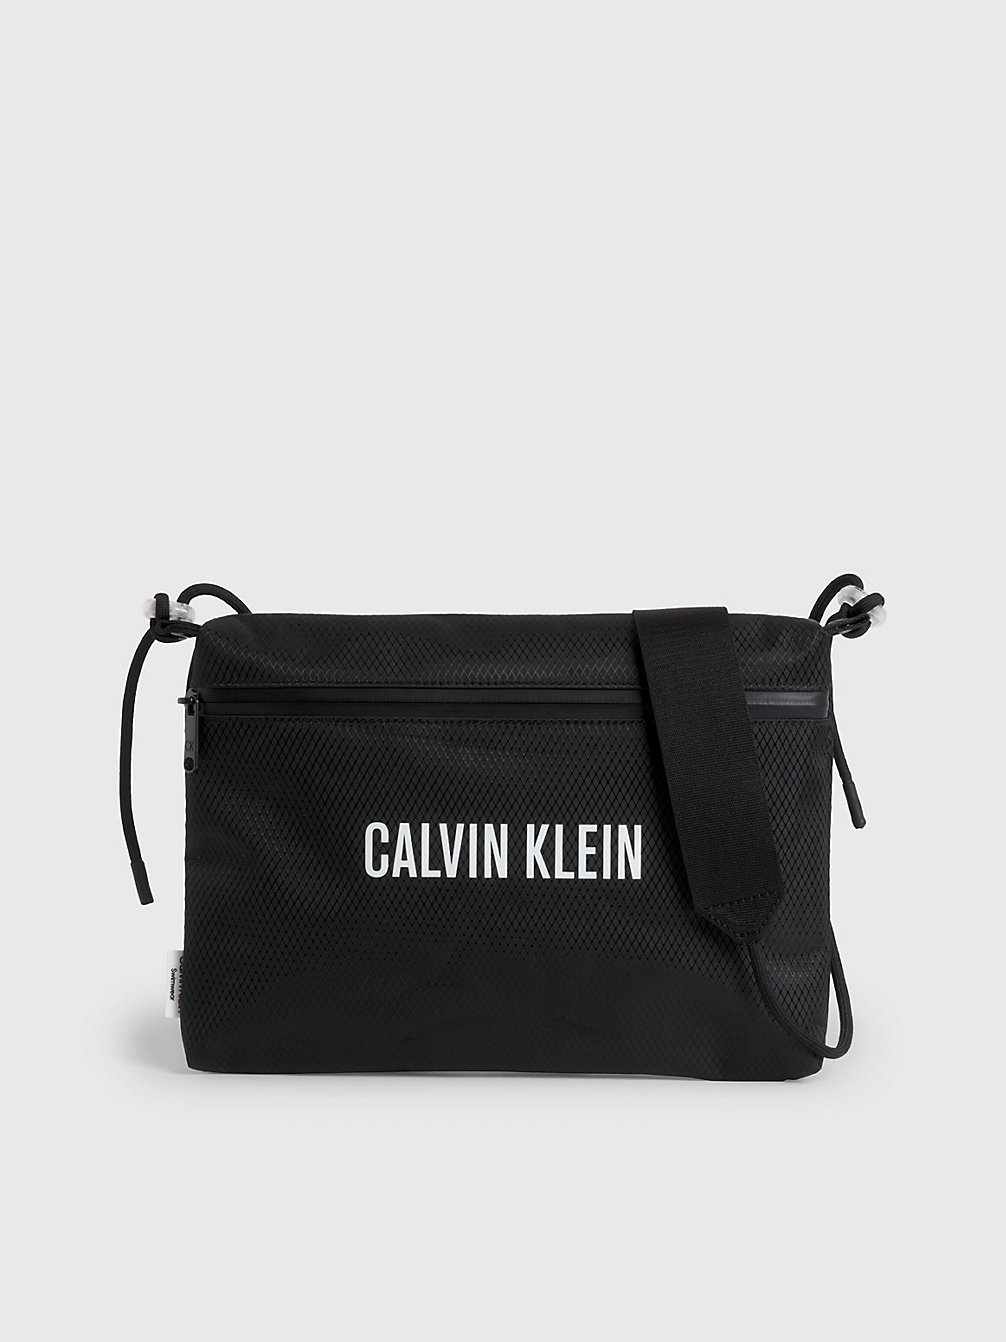 PVH BLACK Crossbody-Strandtasche undefined unisex Calvin Klein